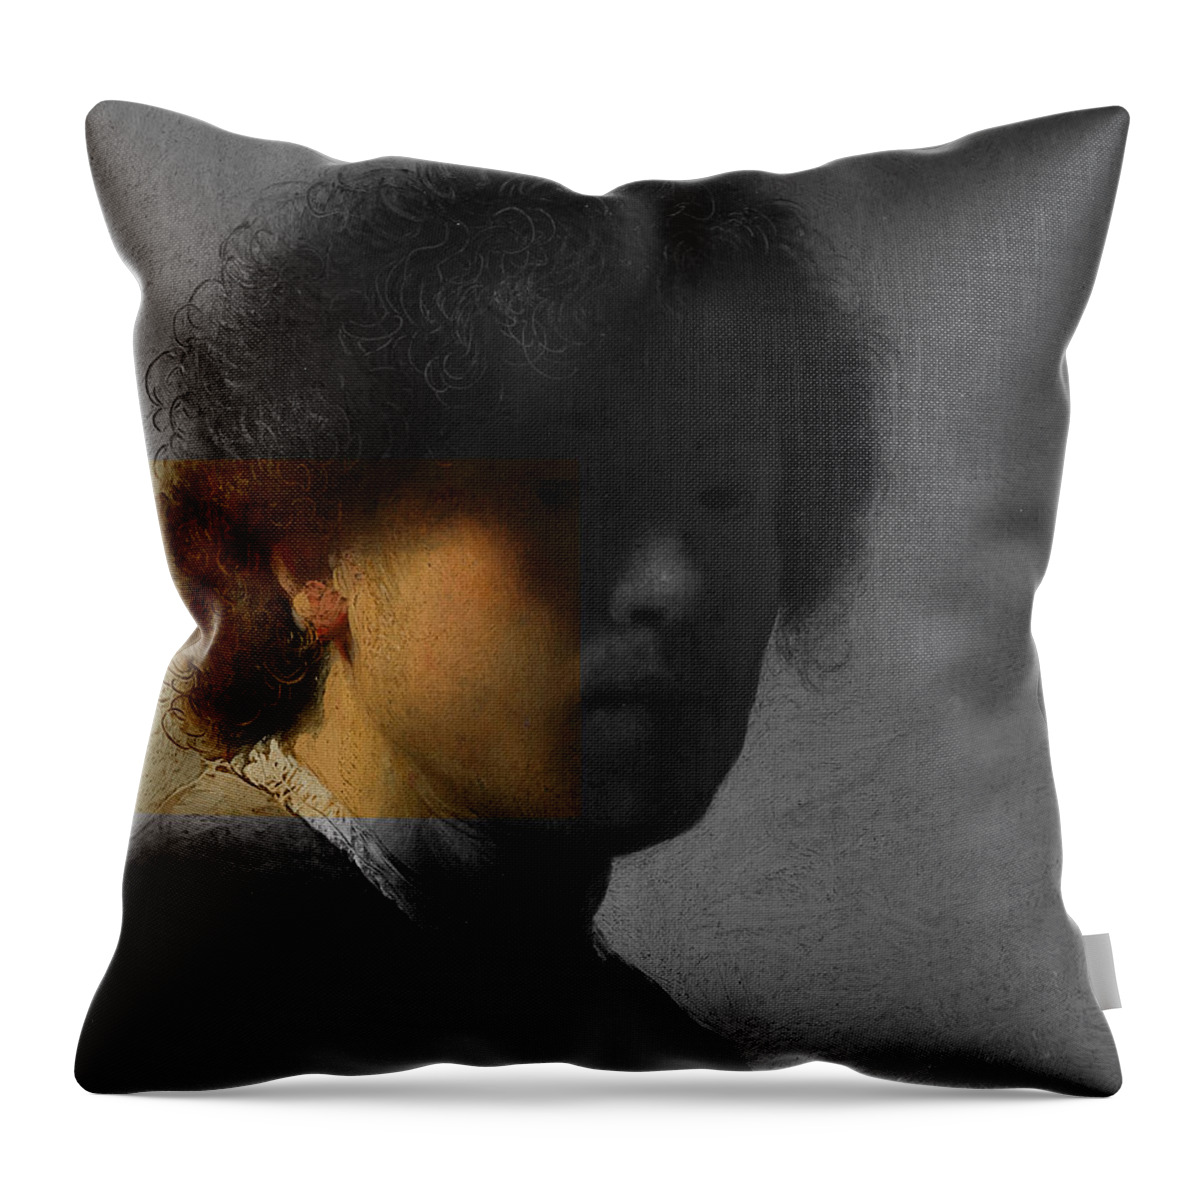 Post Modern Art Throw Pillow featuring the digital art Inv Blend 16 Rembrandt by David Bridburg